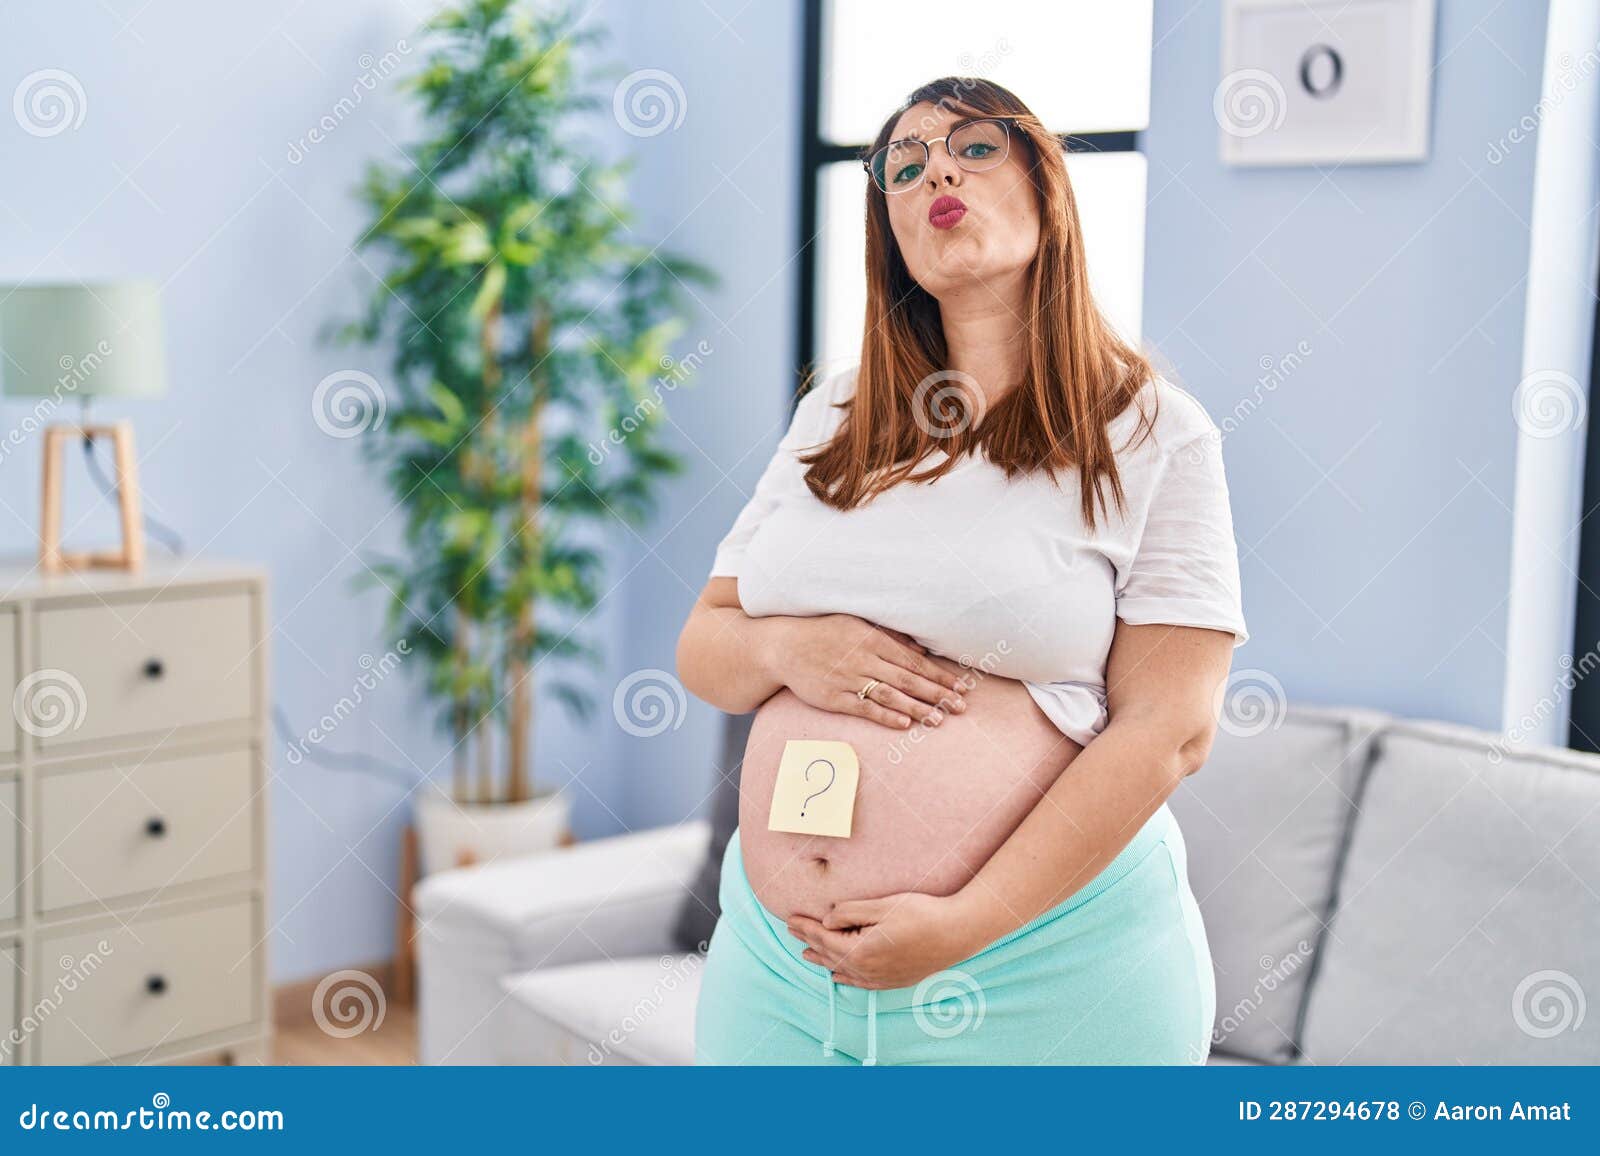 1,246 Pregnant Sexy Stock Photos